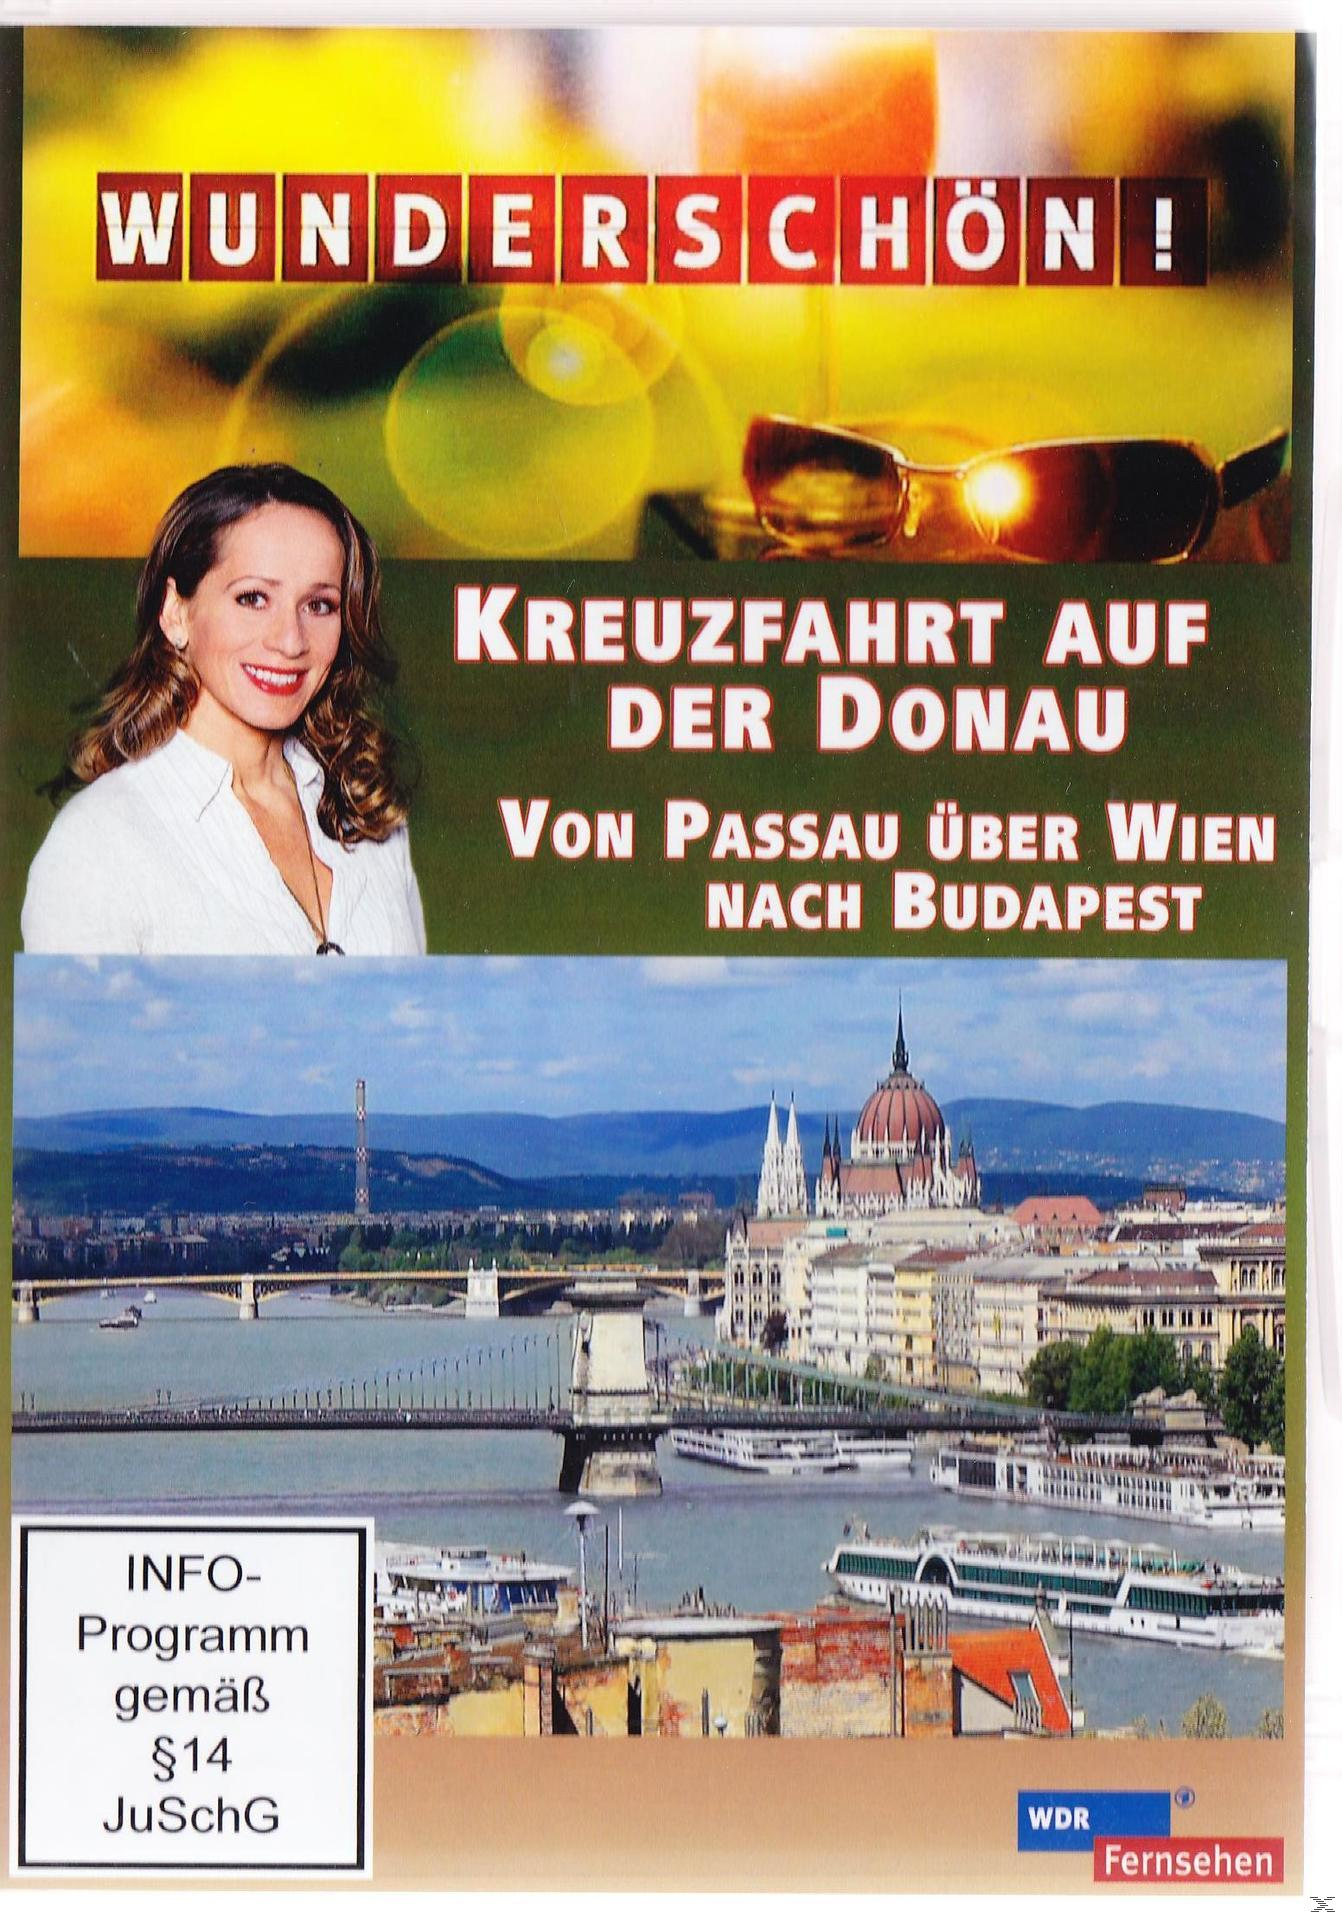 auf Kreuzfahrt DVD Donau: der Wunderschön! nach Wien über - Passau Budapest Von